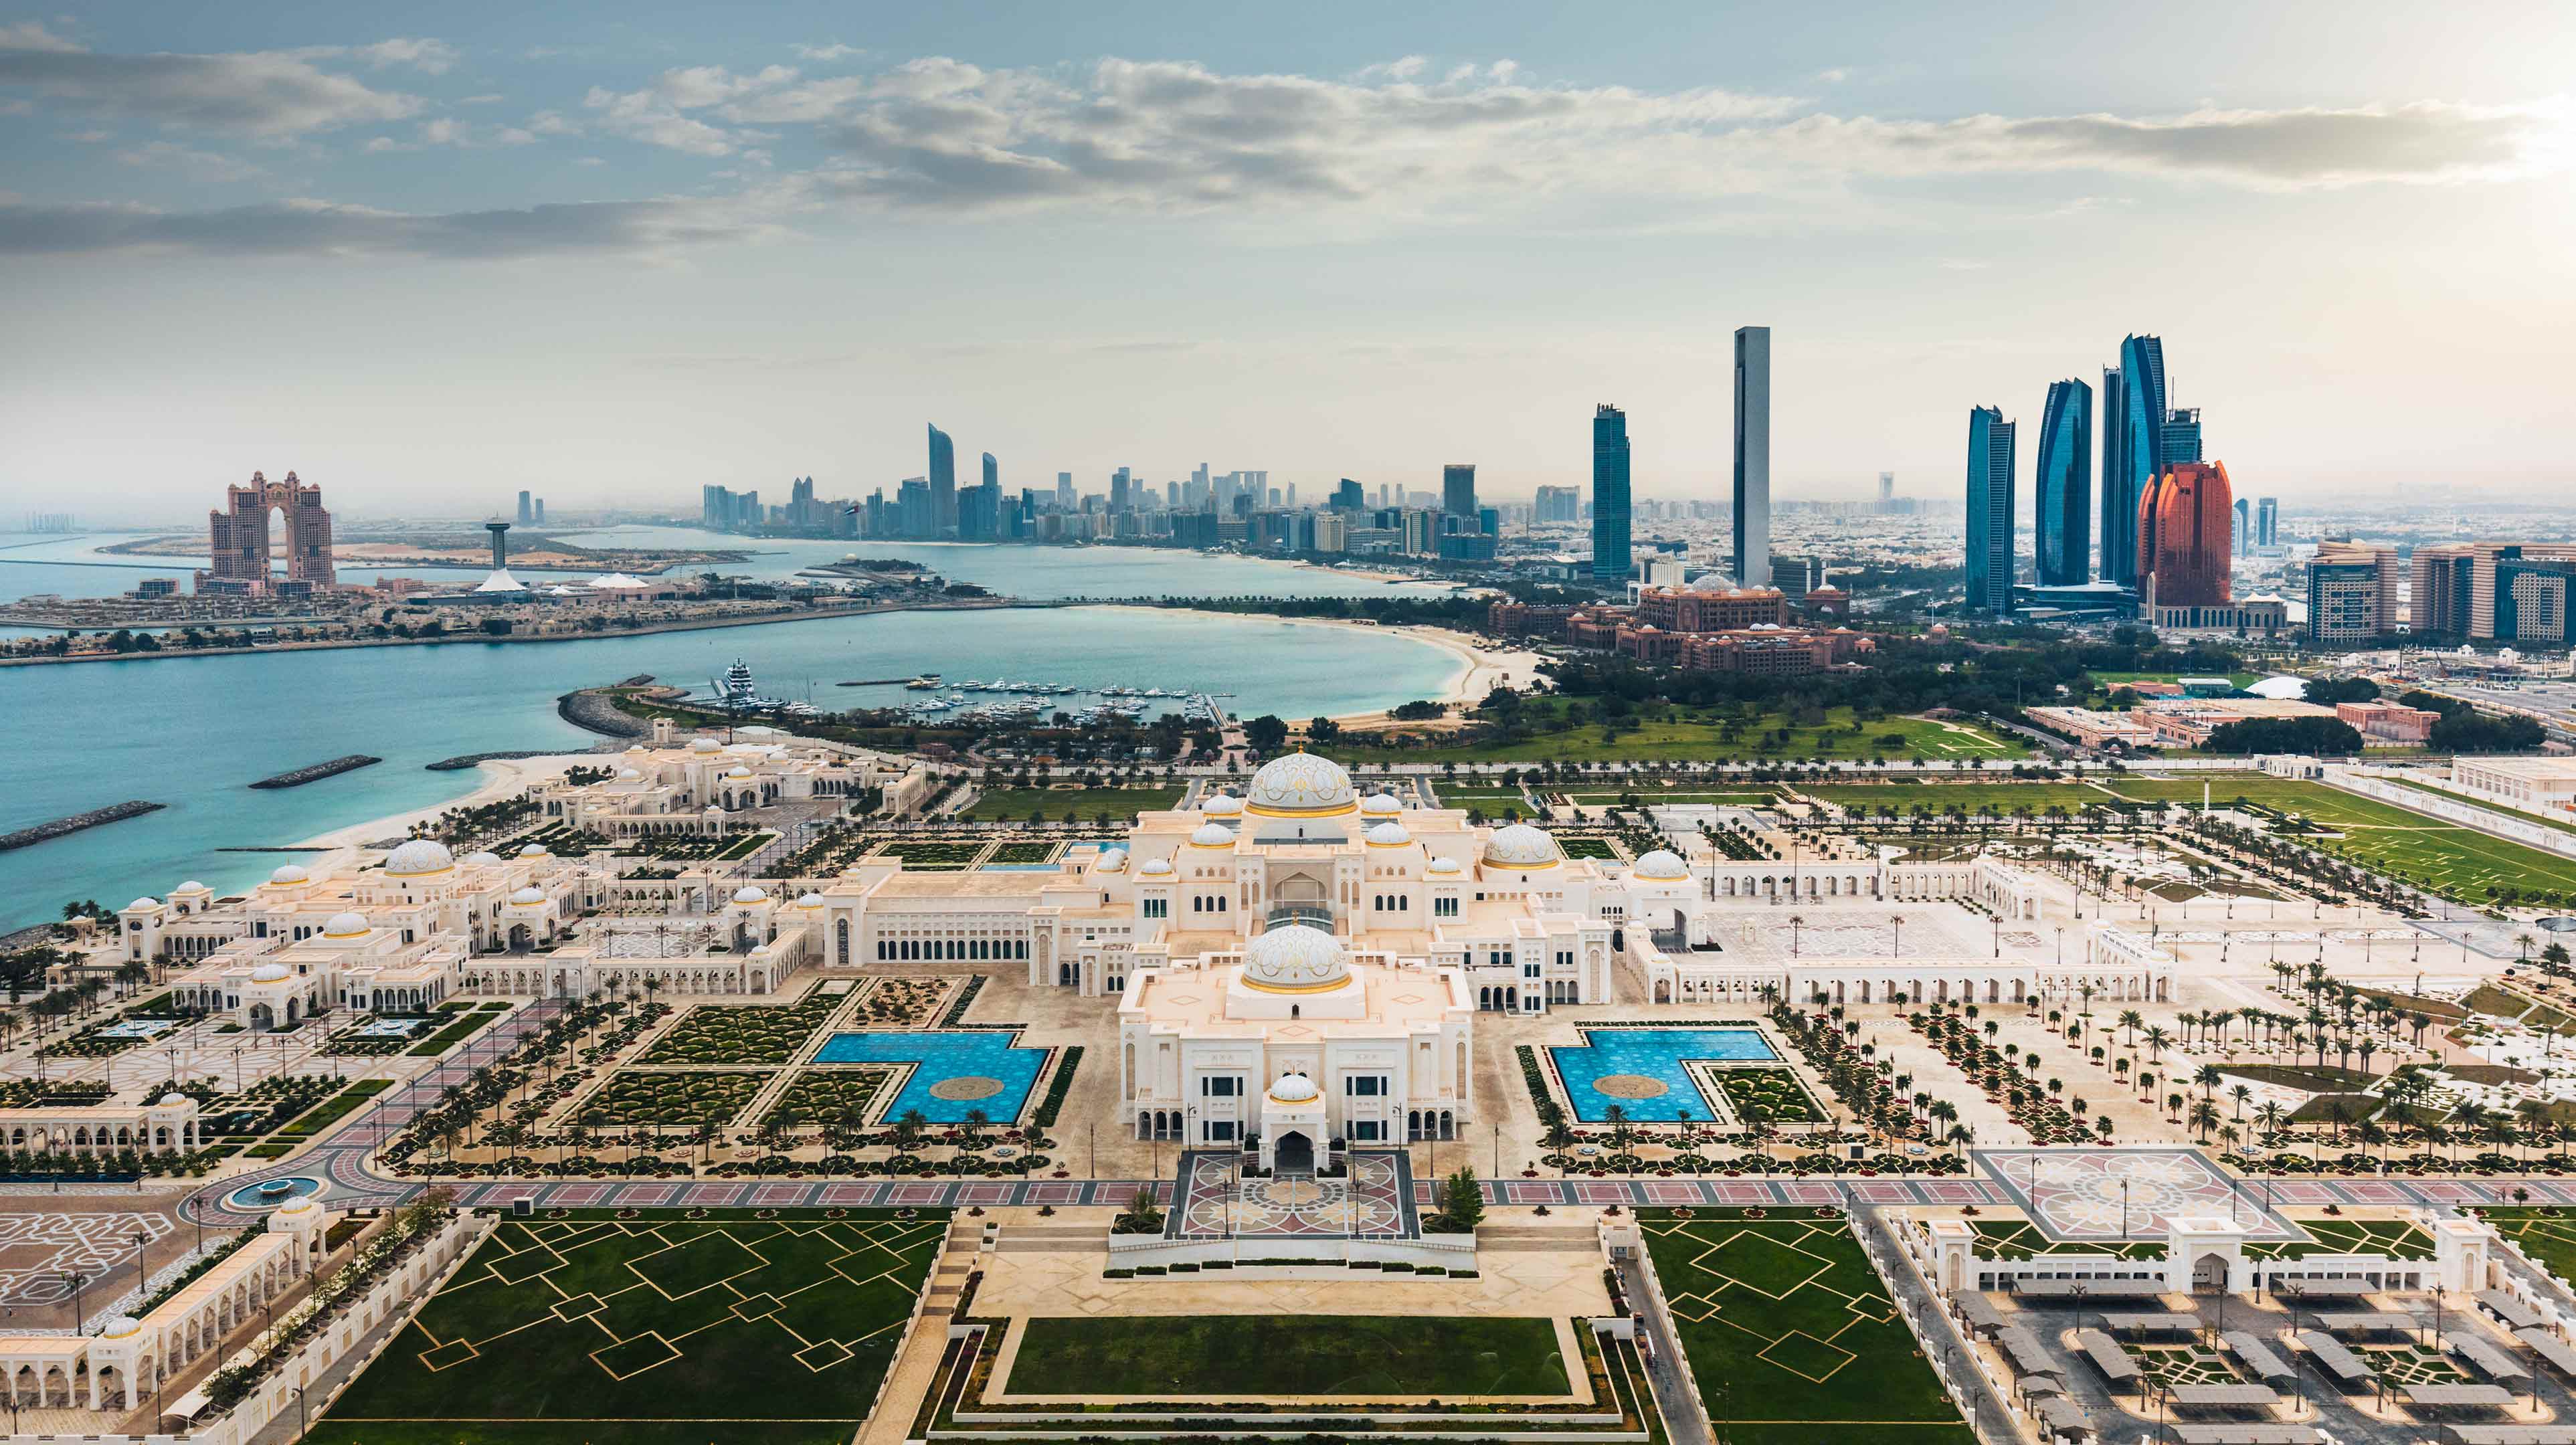 Panoramabild der weitläufigen Gebäude und Gärten des Präsidentenpalastes Qasr Al Watan in Abu Dhabi